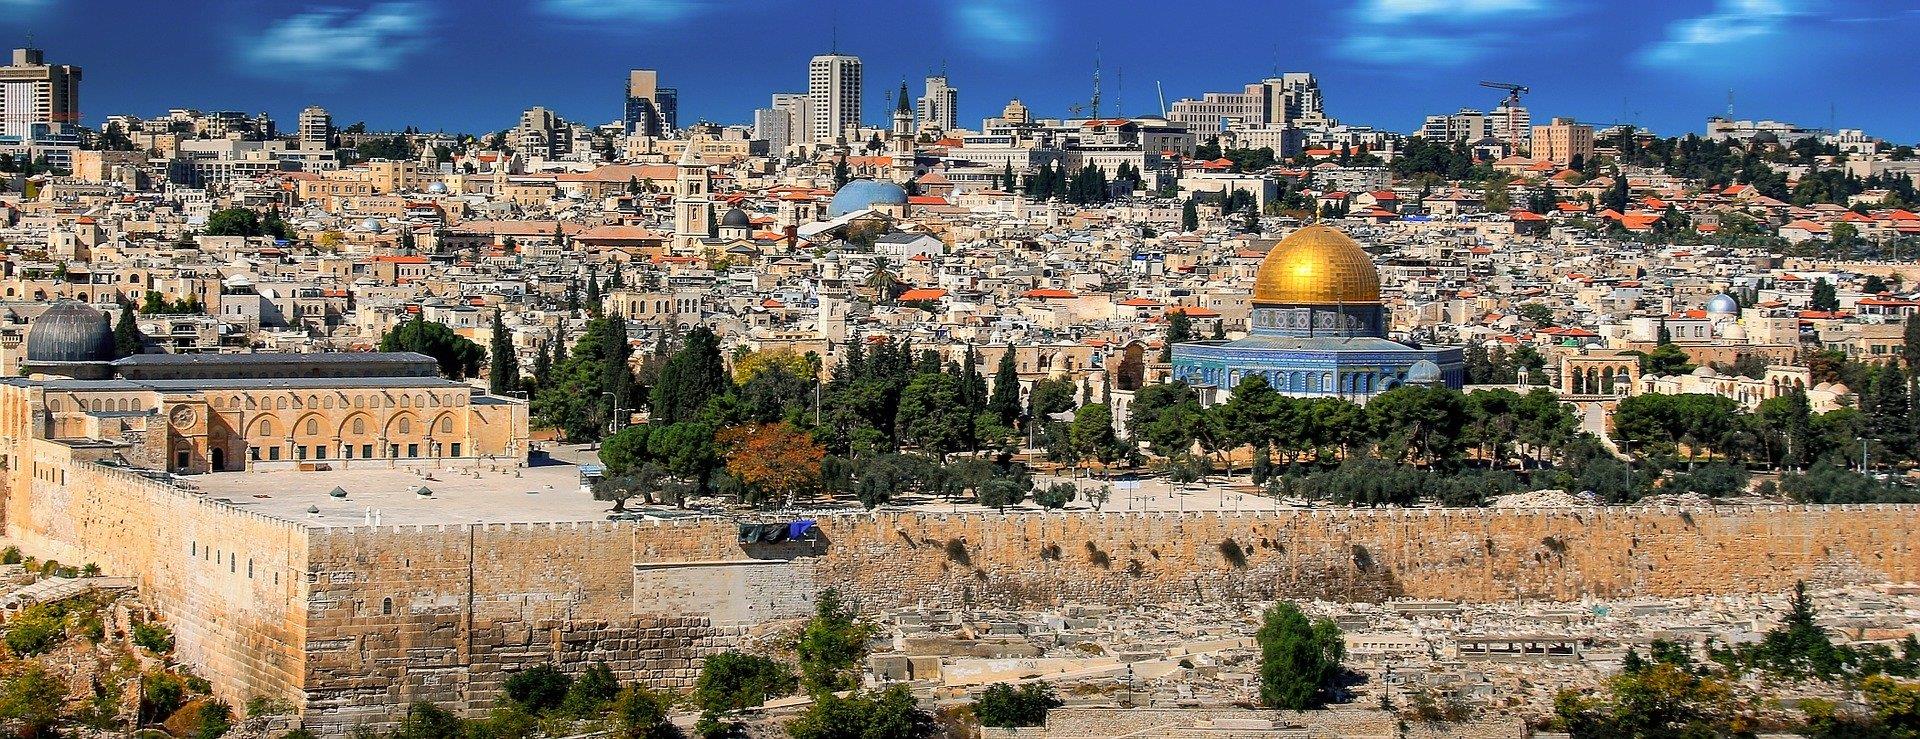 성전산  Temple Mount